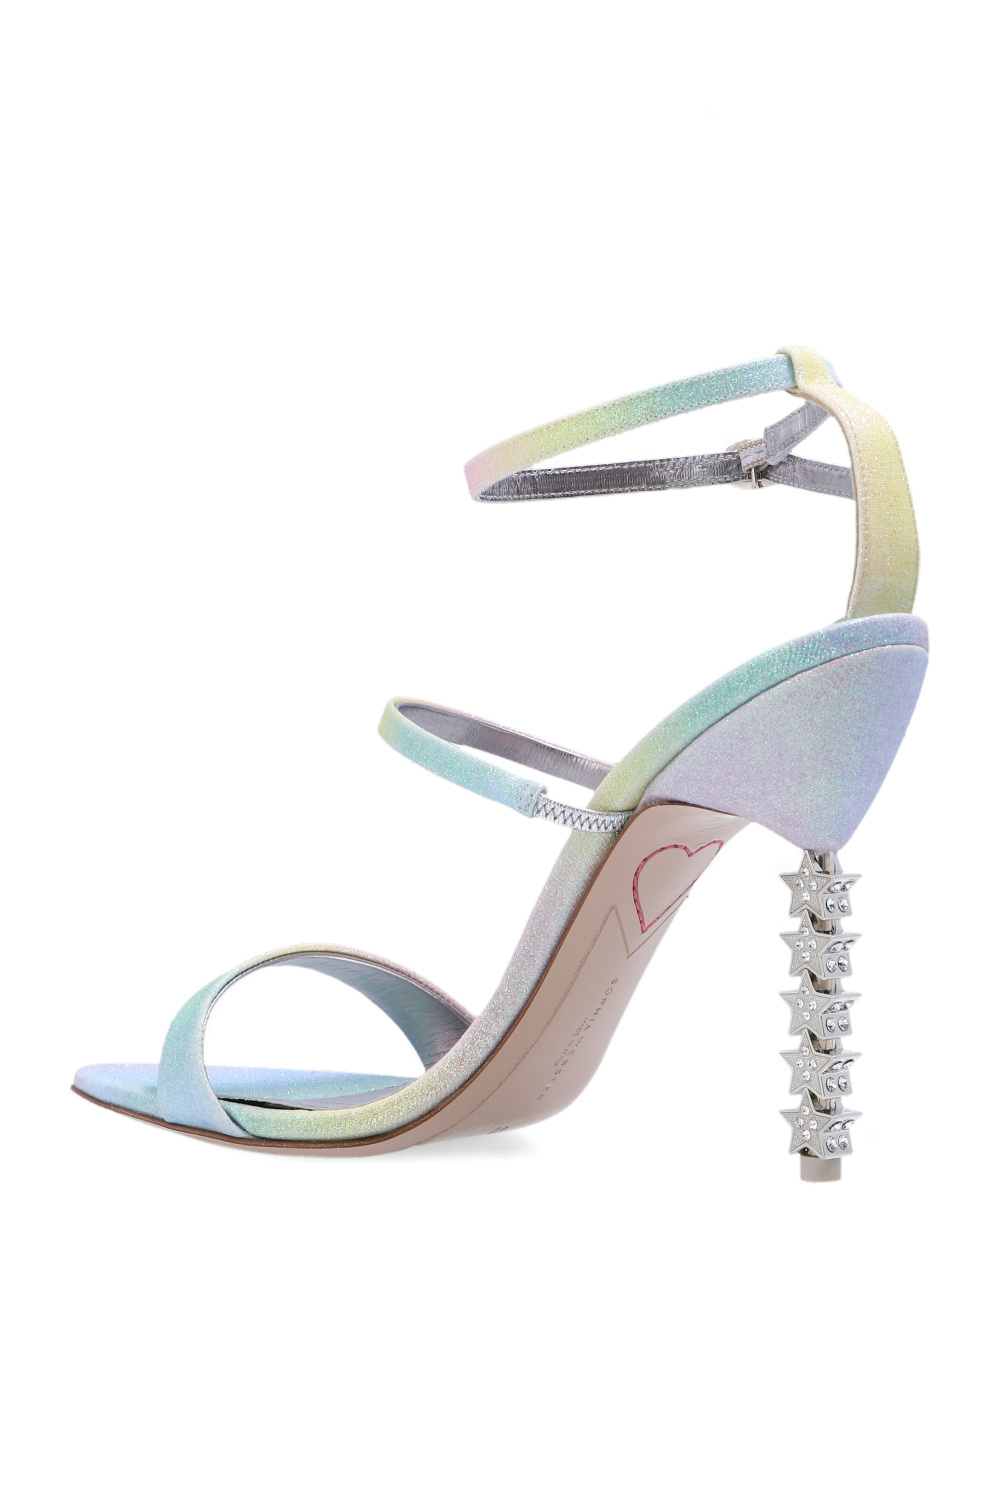 Sophia Webster ‘Rosalind’ heeled blanco sandals